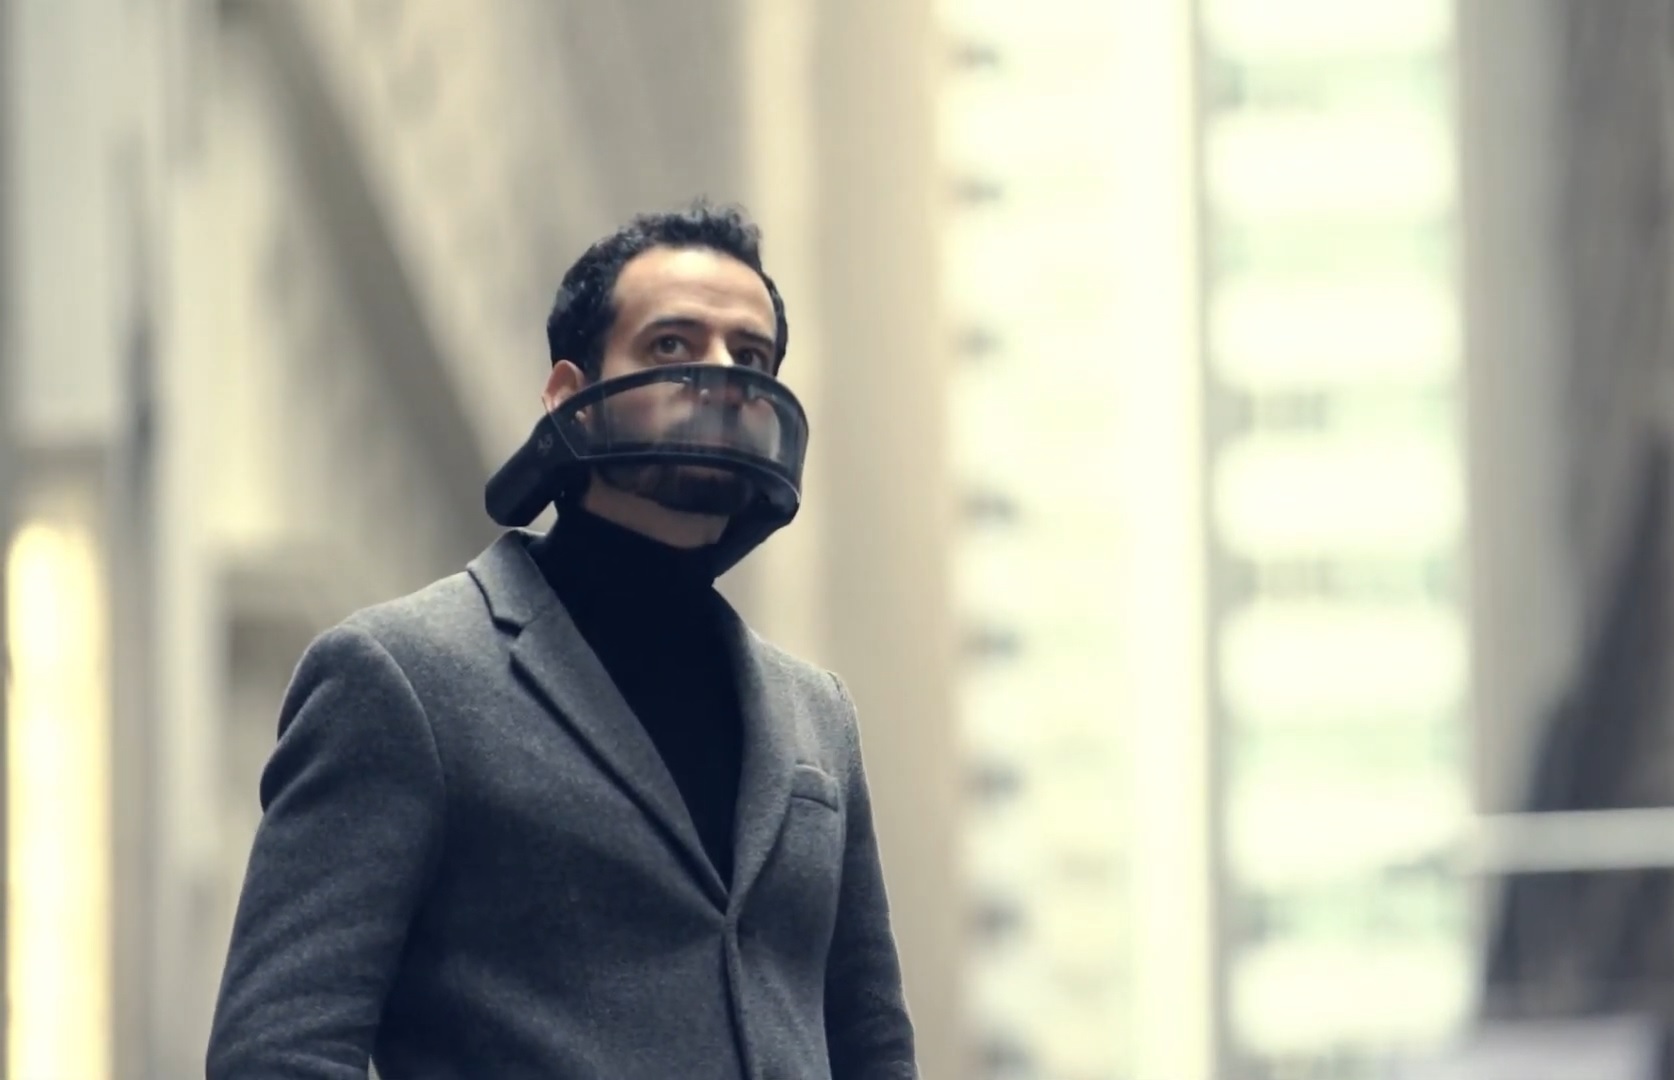 A máscara Atmos possui design futurista e pode ser uma aposta para o mercado de proteção individual